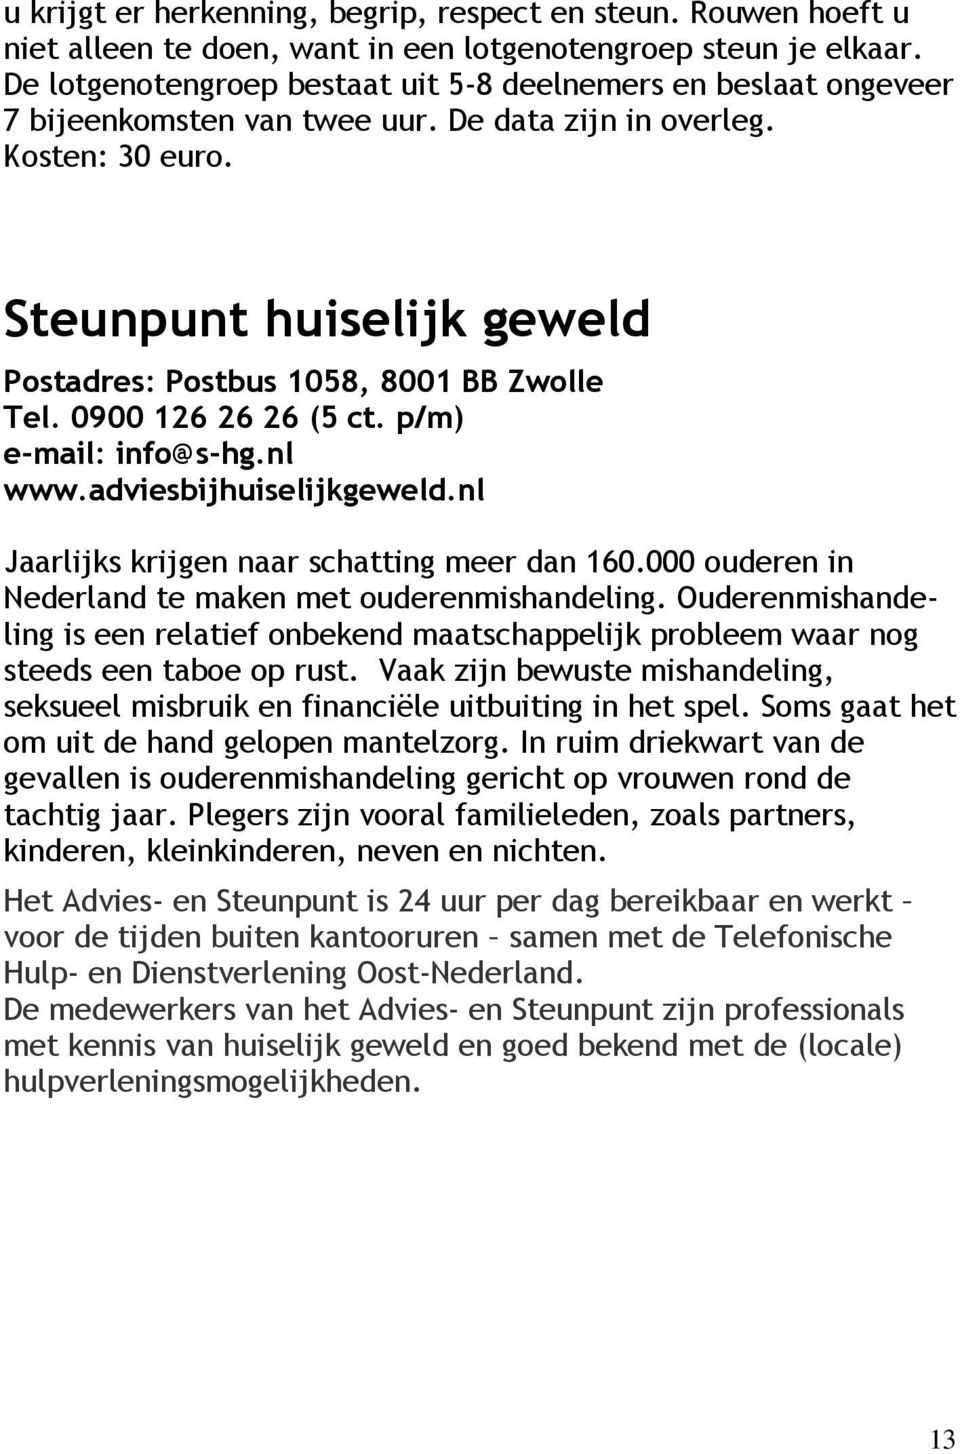 Steunpunt huiselijk geweld Postadres: Postbus 1058, 8001 BB Zwolle Tel. 0900 126 26 26 (5 ct. p/m) e-mail: info@s-hg.nl www.adviesbijhuiselijkgeweld.nl Jaarlijks krijgen naar schatting meer dan 160.